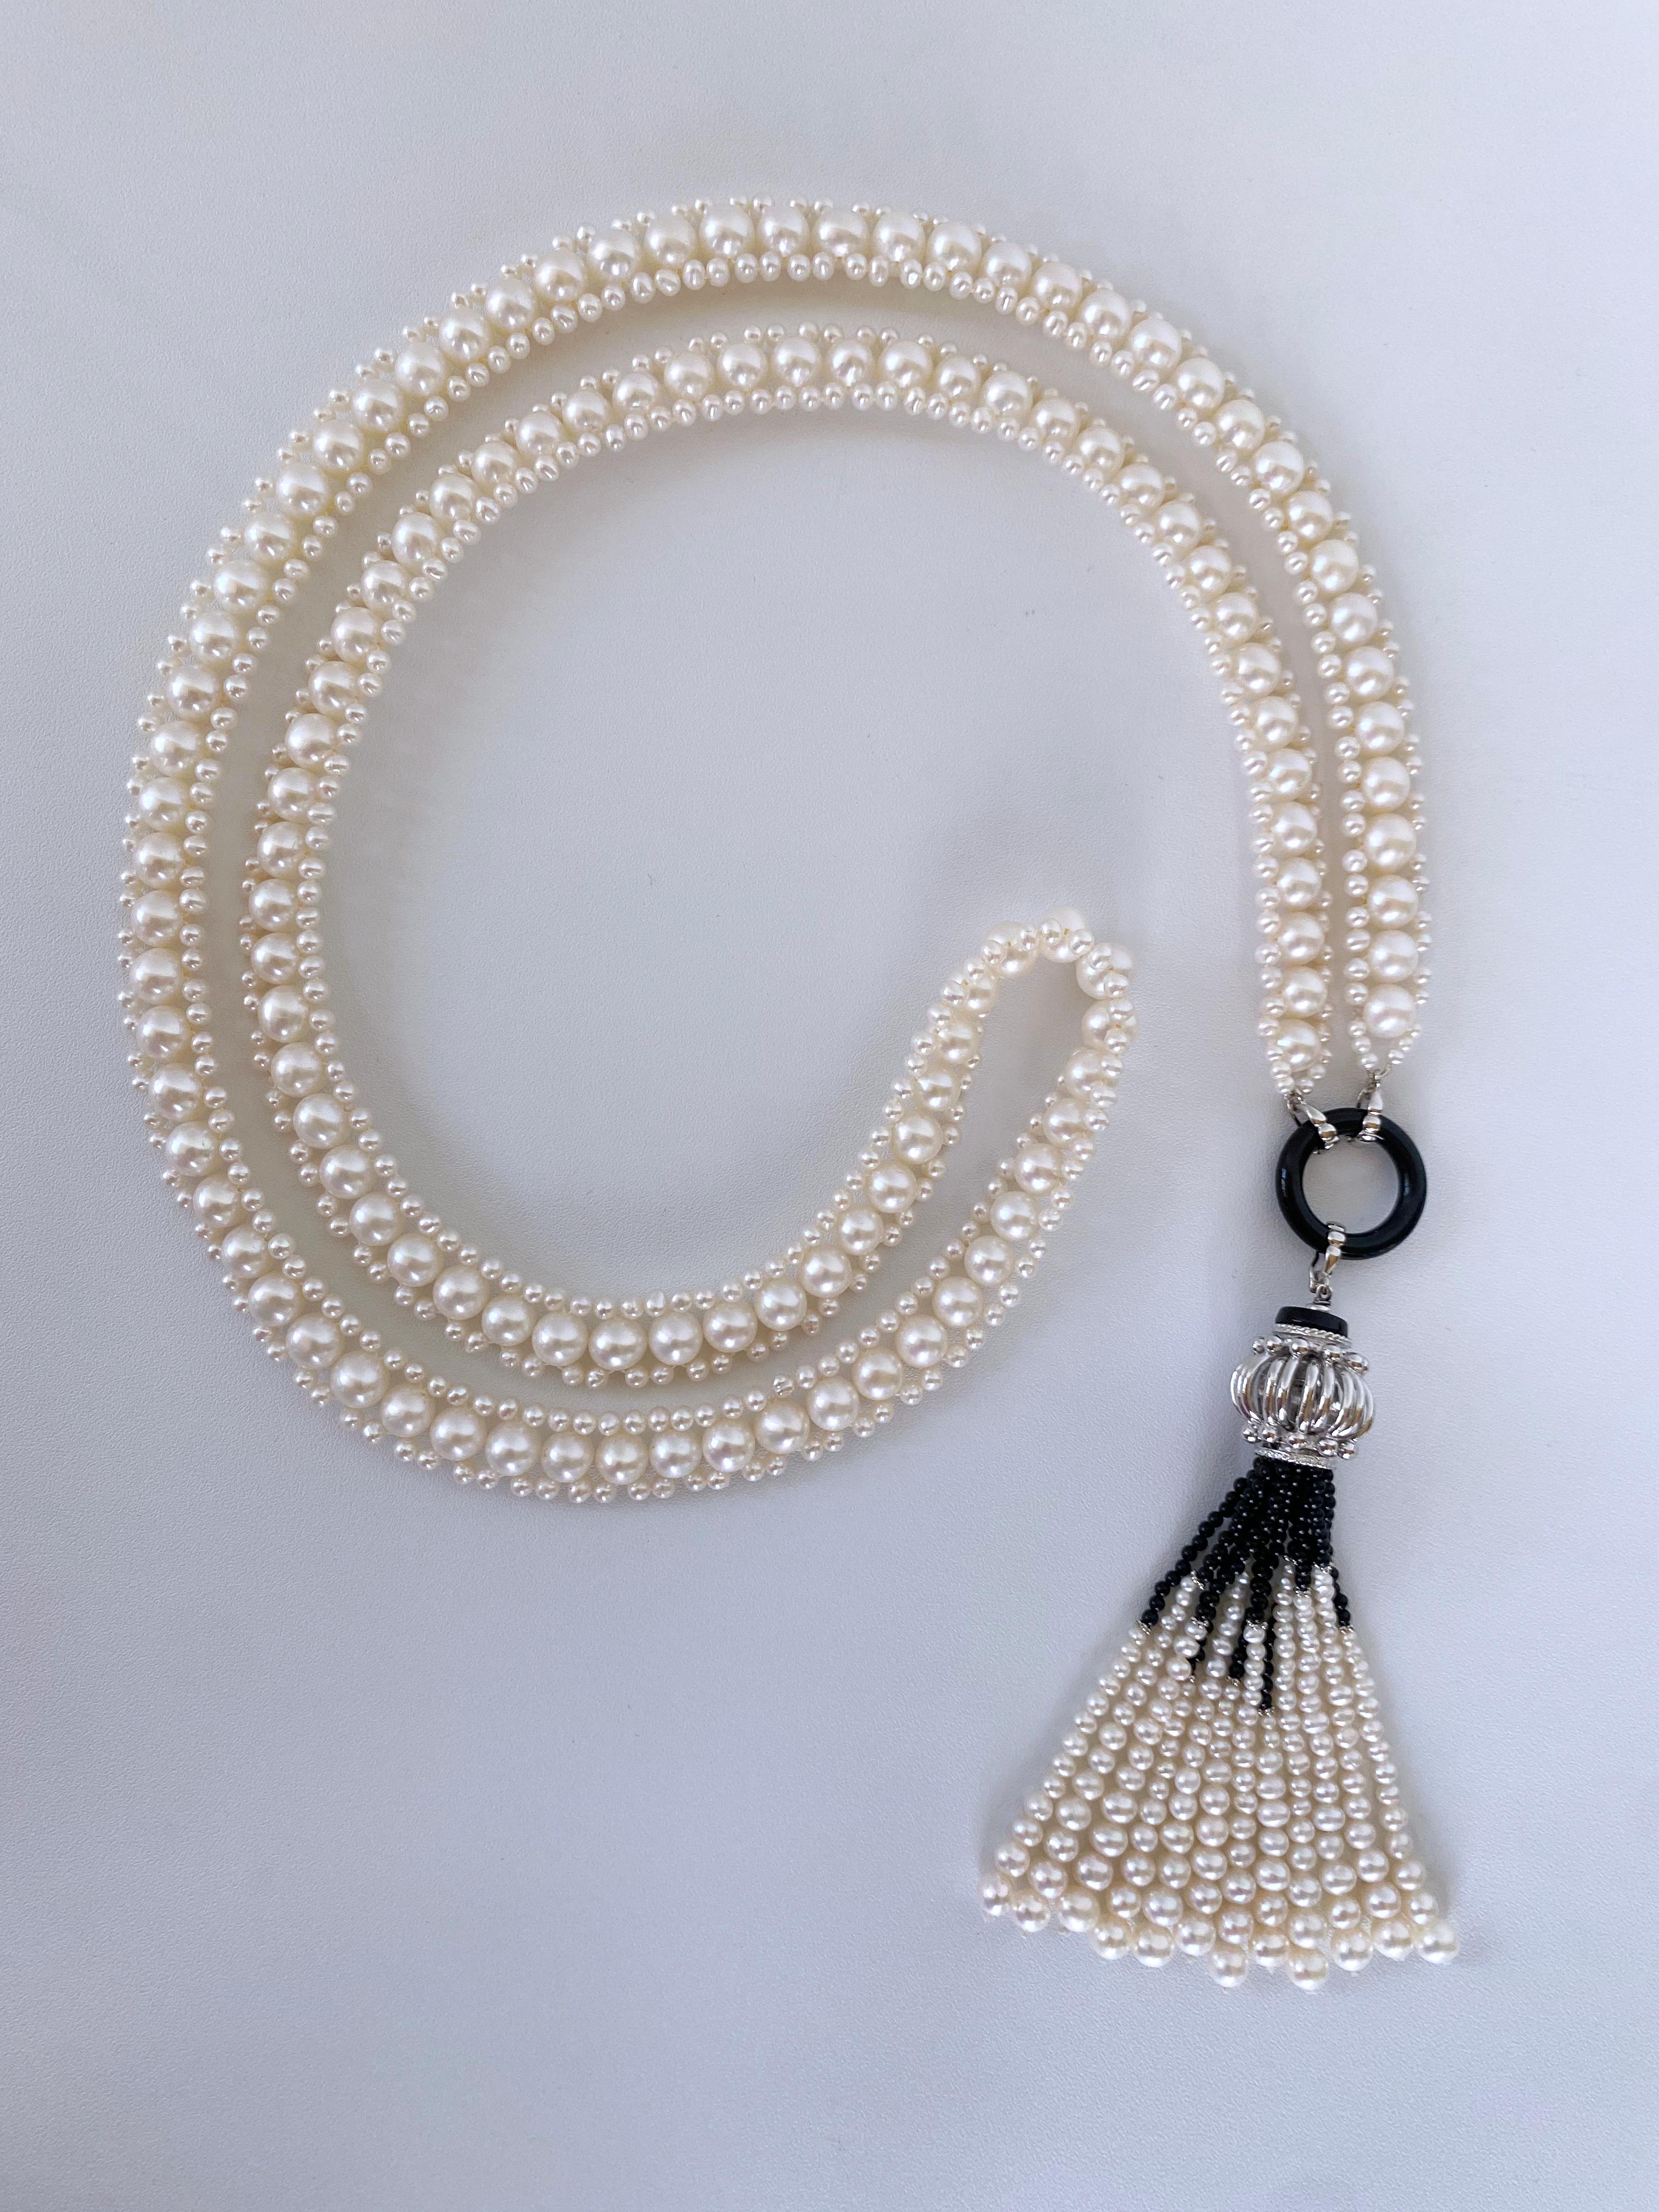 Handgeflochtenes Stück von Marina J. Dieses atemberaubende Sautoir besteht ausschließlich aus weißen Perlen, die einen wunderbaren Glanz und Schimmer aufweisen und zu einem klassischen Design verwoben sind. Mit einer Länge von 38 Zoll ohne Quaste